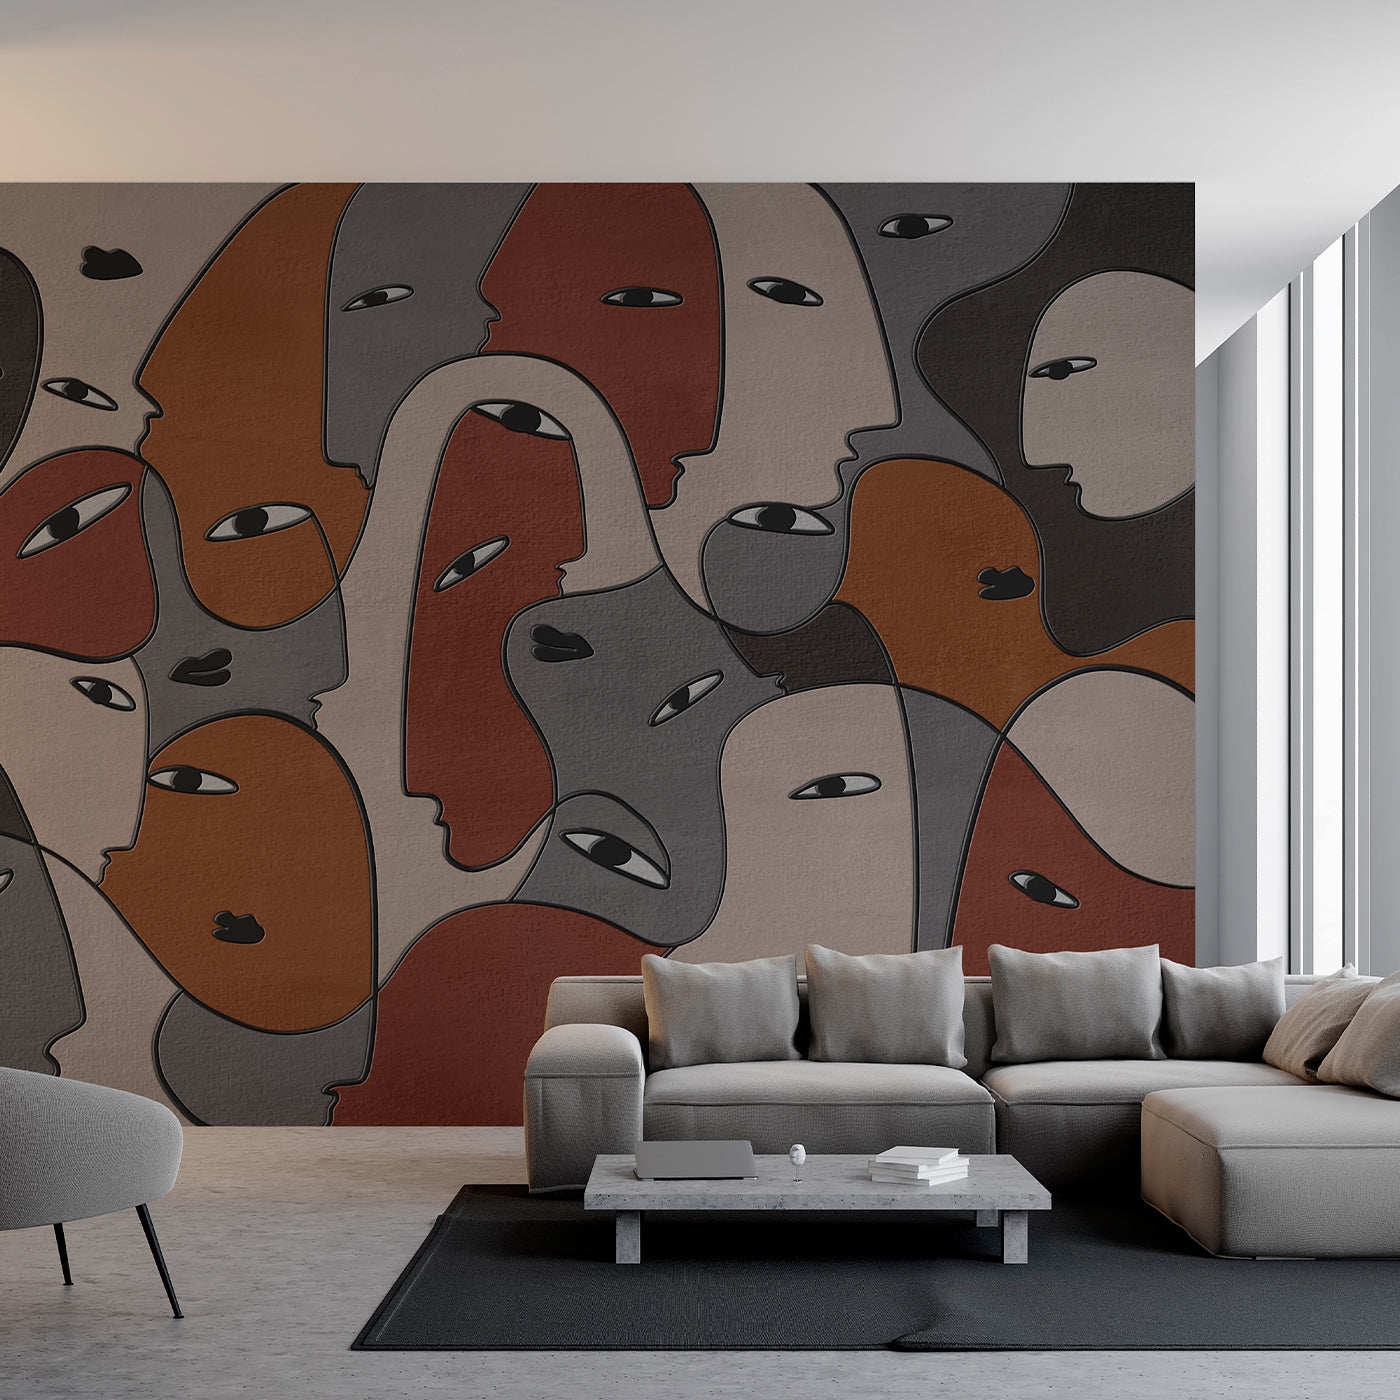 innerLine 808 textured wallpaper - Alternative view 1